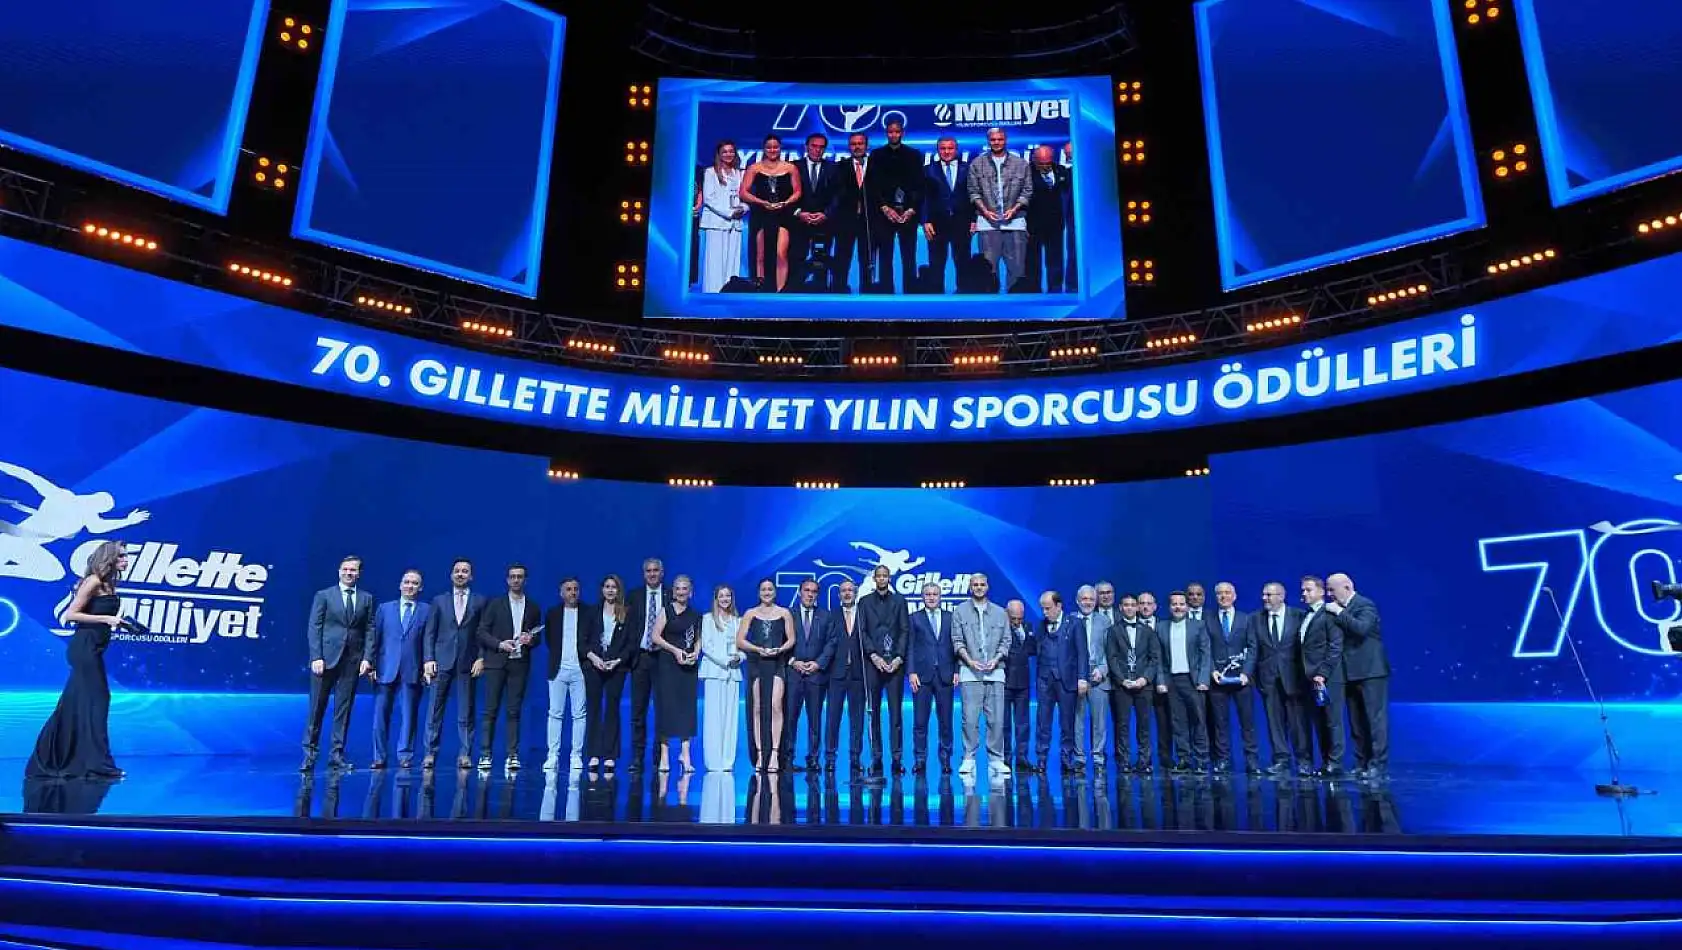 70'inci Gillette Milliyet Yılın Sporcusu Ödülleri töreni düzenlendi